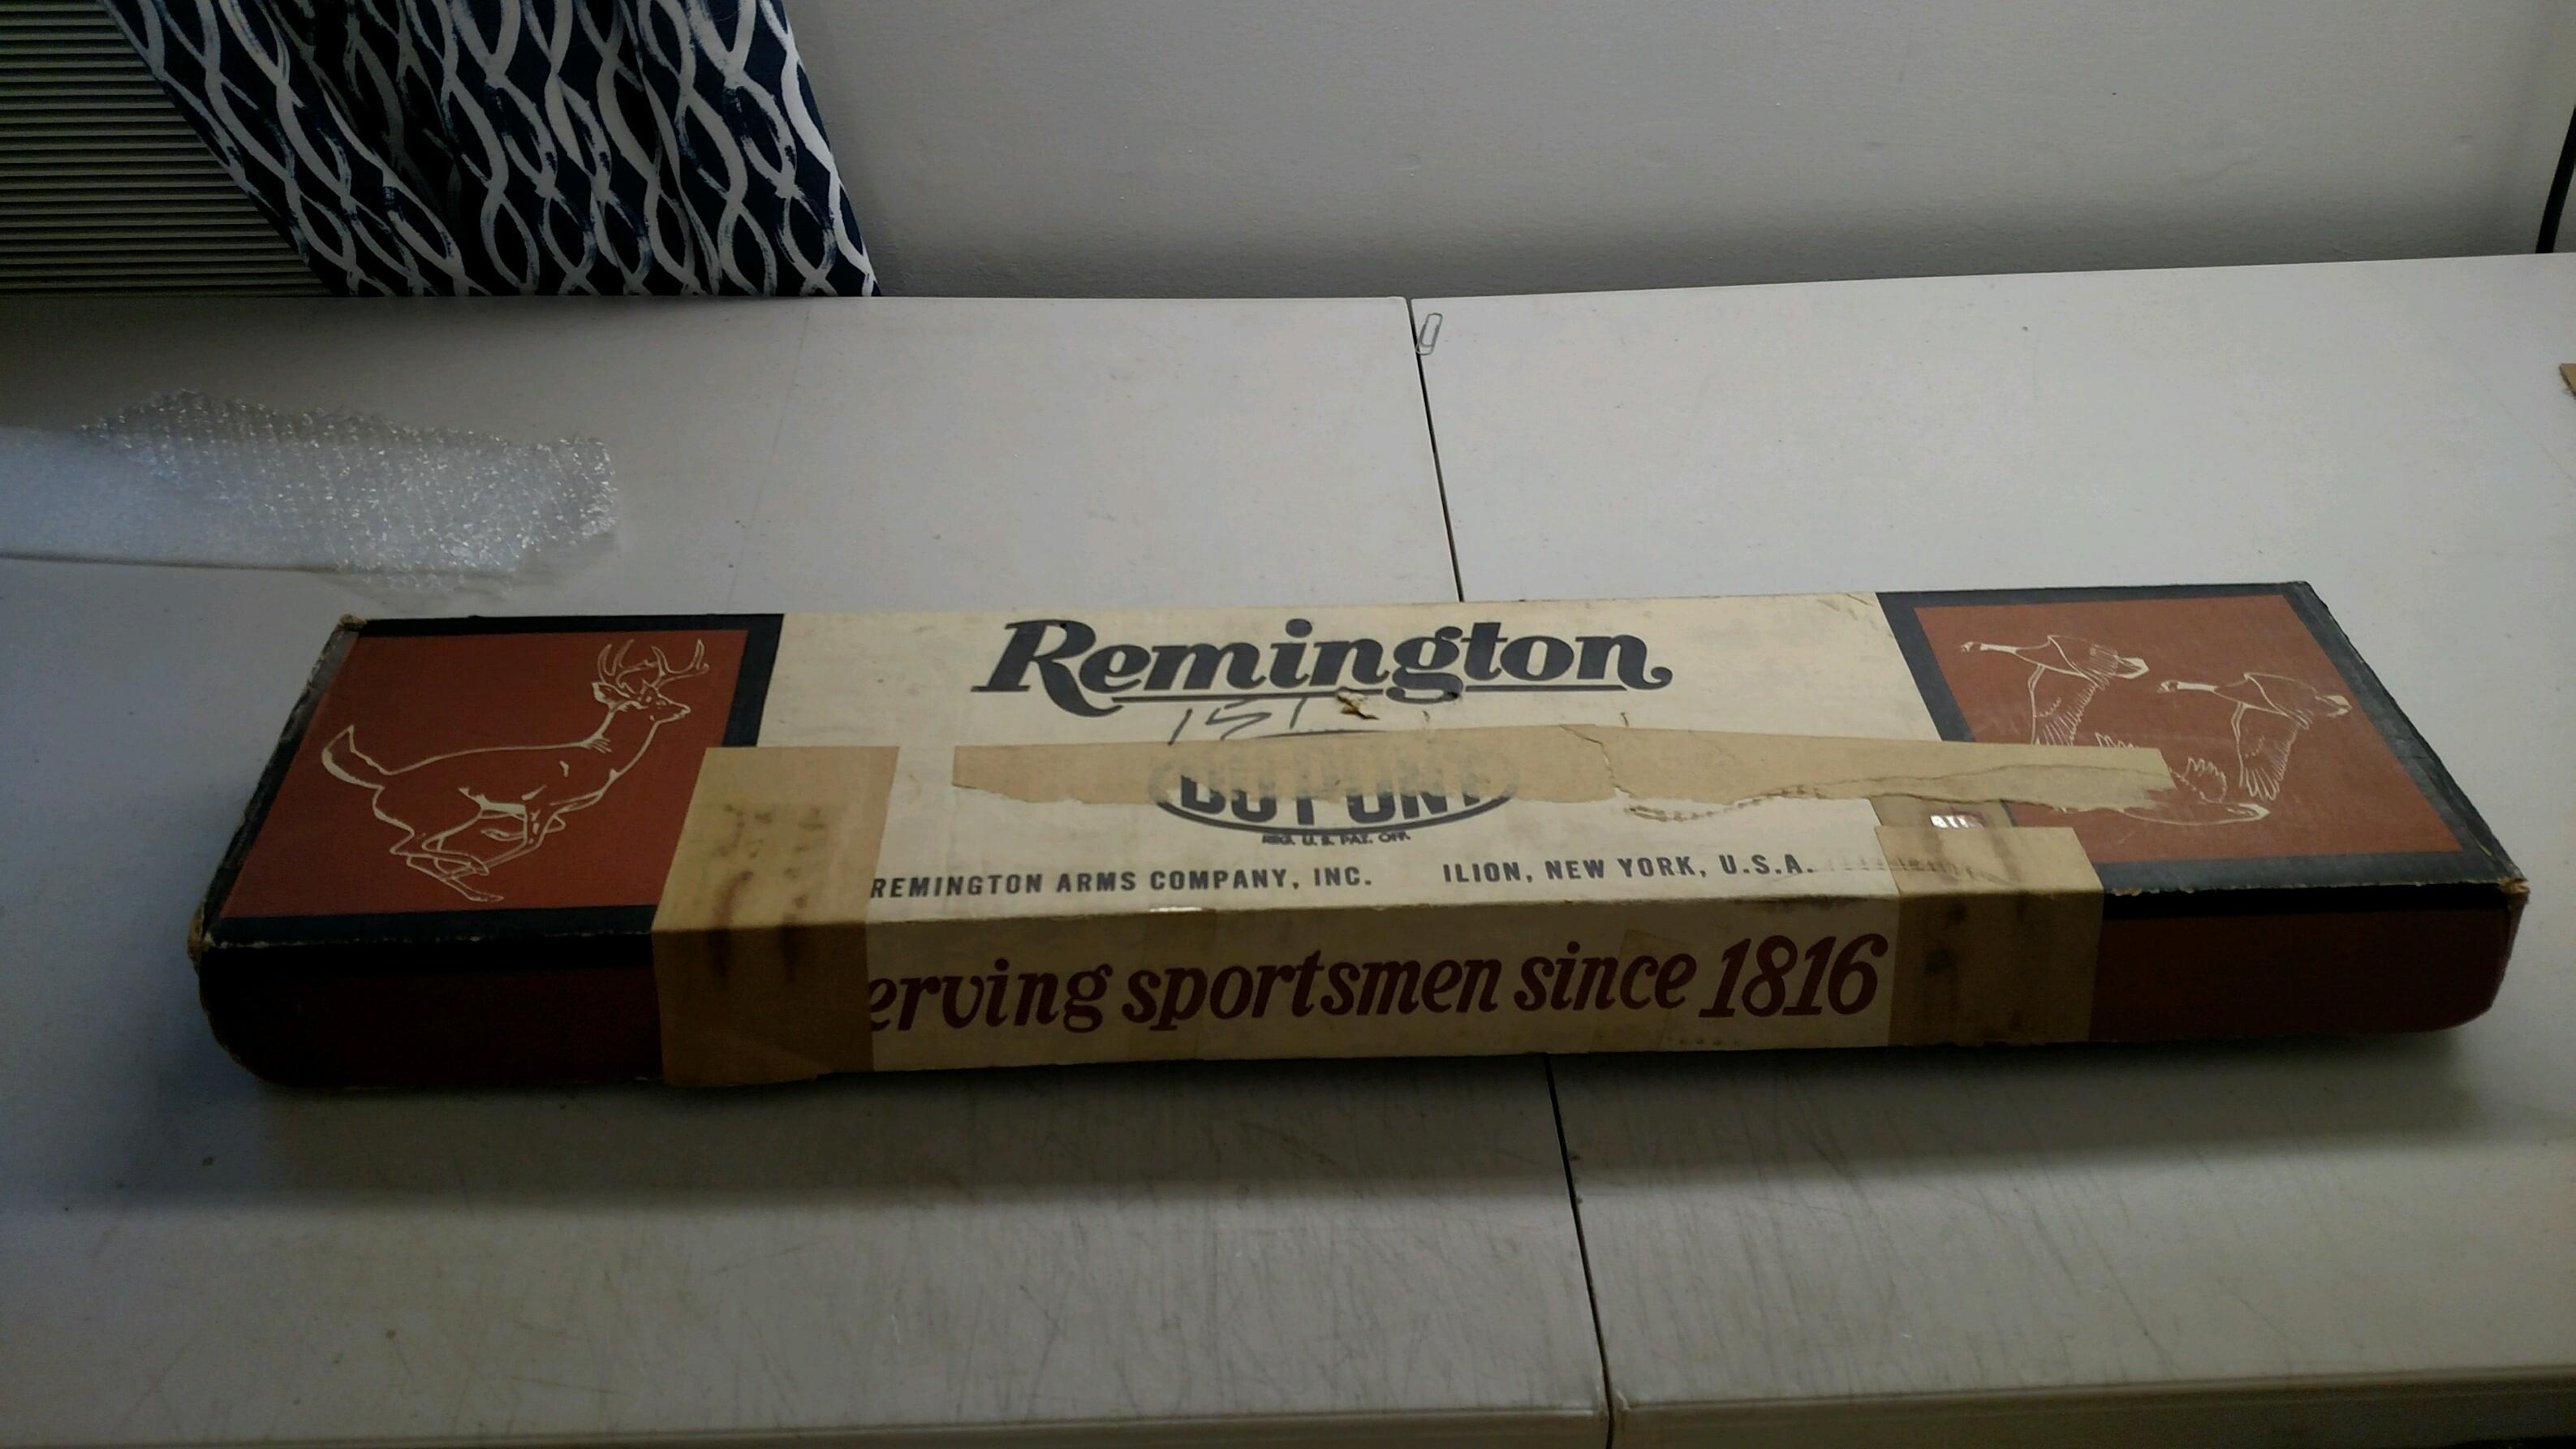 Remington    Mod 1100    16 GA    26"    Mod    SN: 484016W    Condition: L